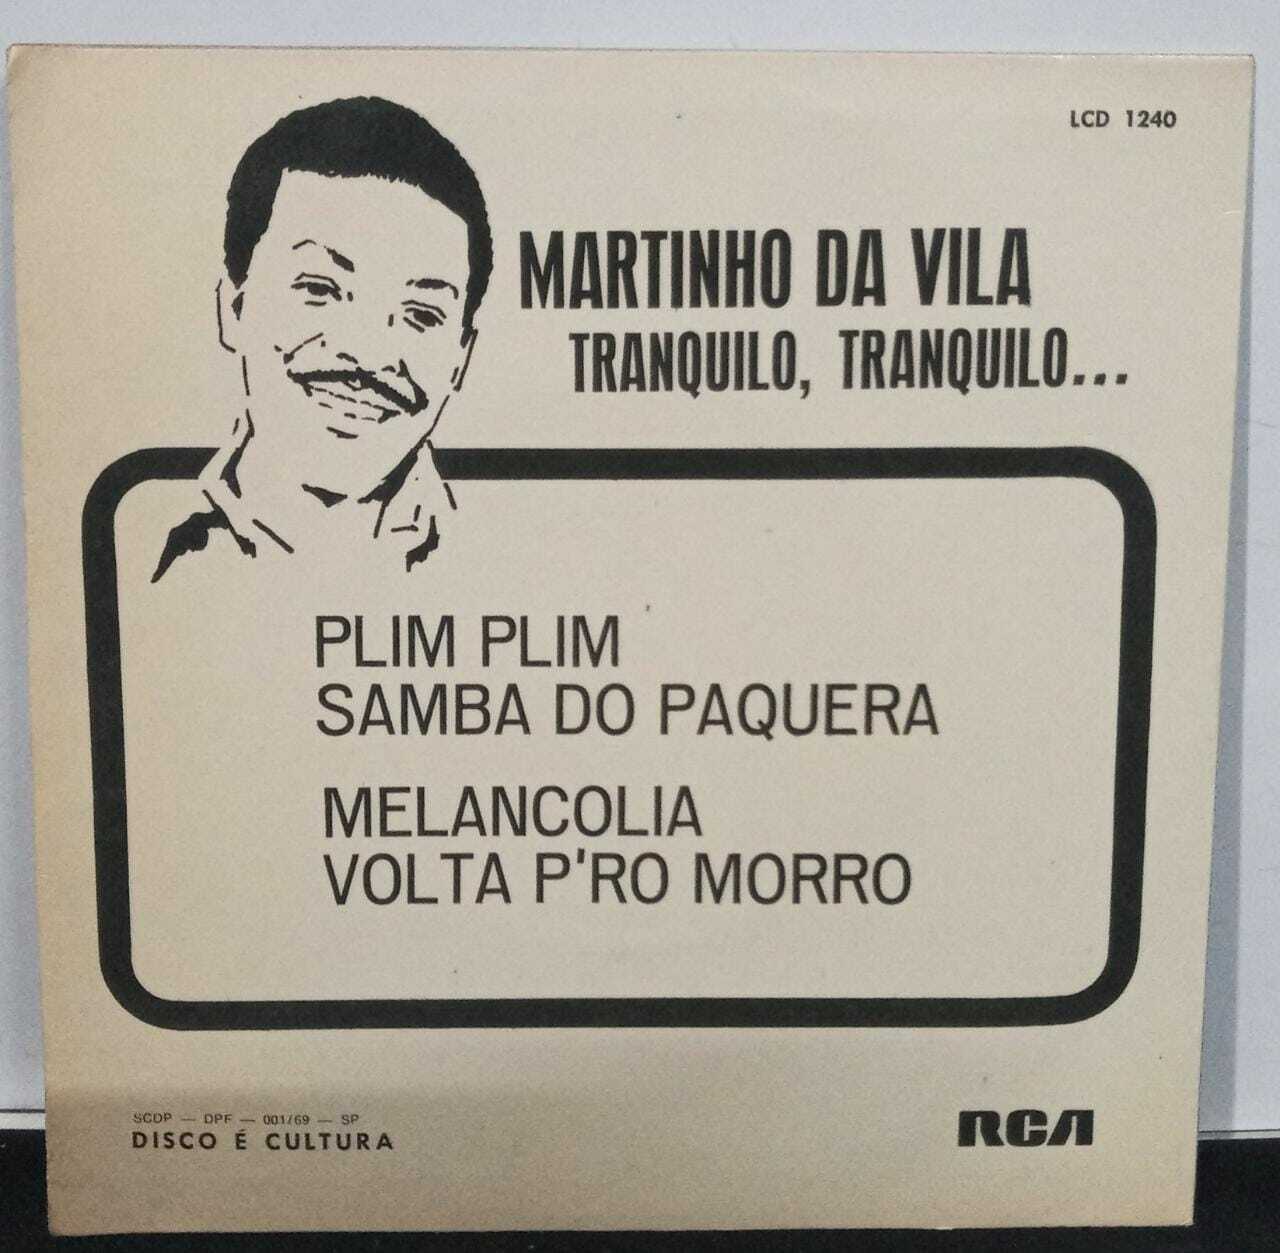 Vinil Compacto - Martinho Da Vila - Tranquilo Tranquilo